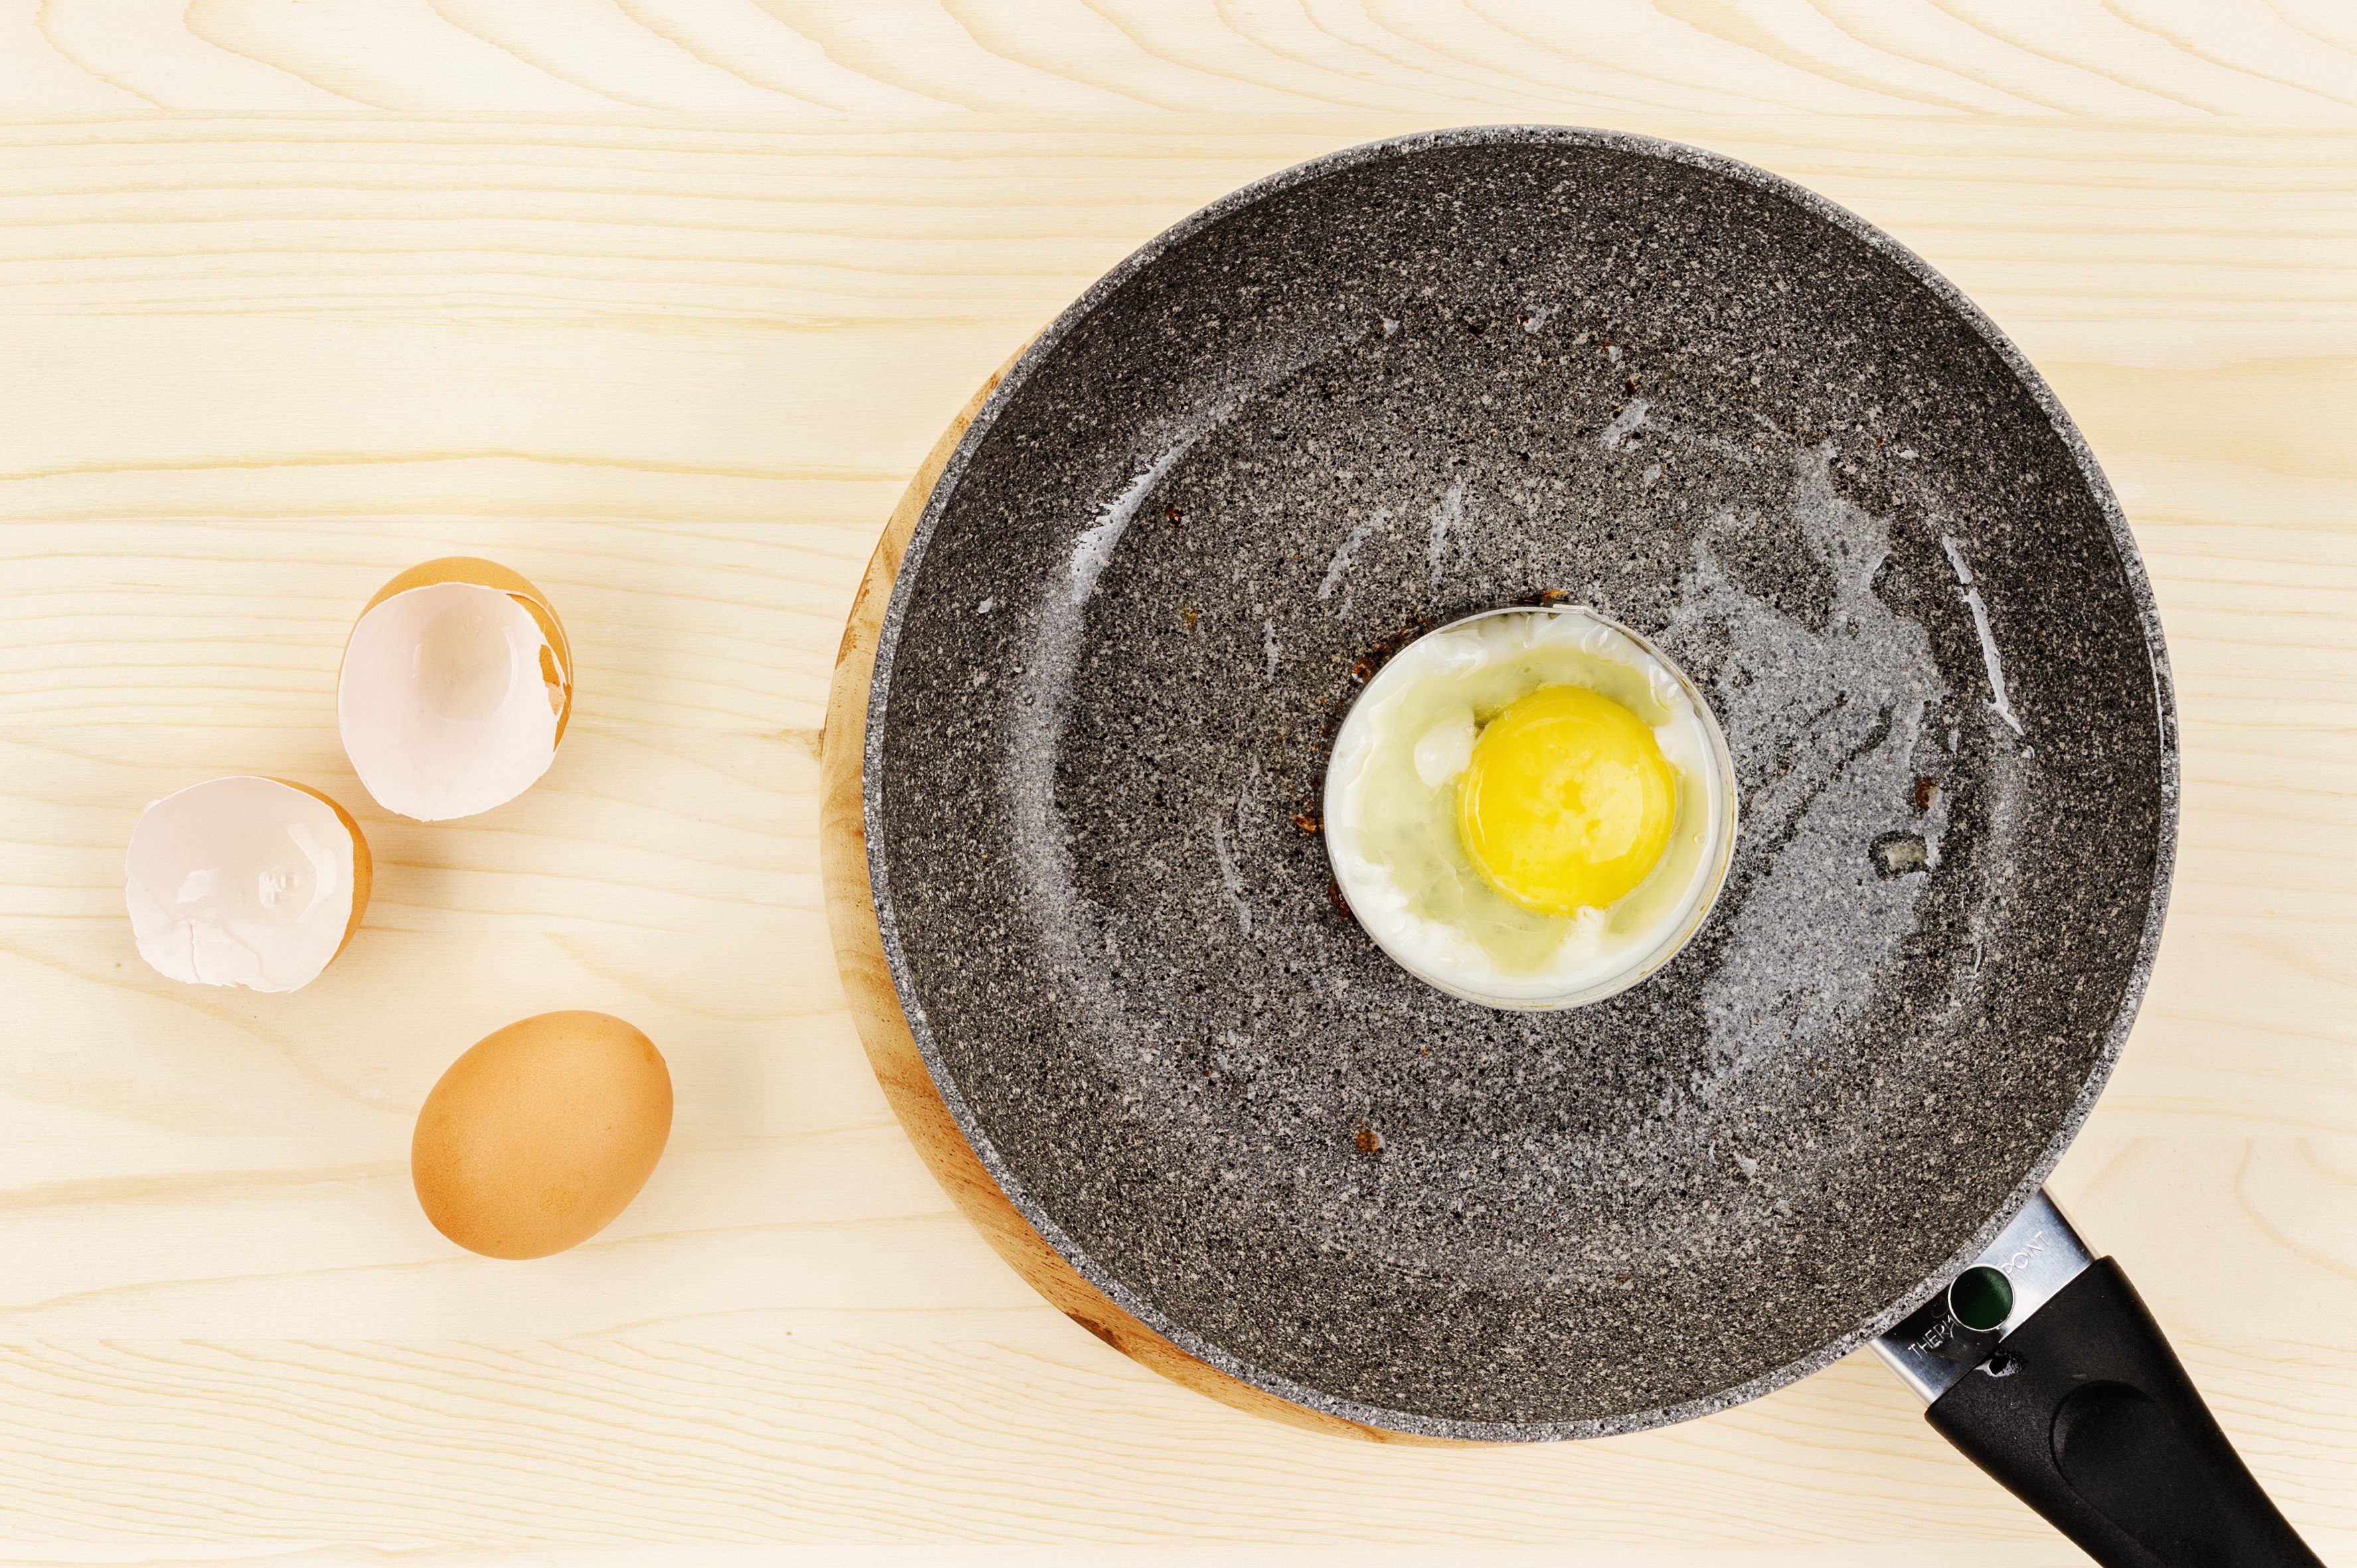 Теплые яички. Жареные яйца. Форма для яичницы круглая. Жареное яйцо в форме. Чугунная сковорода с яичницей и колбасой вид сверху.